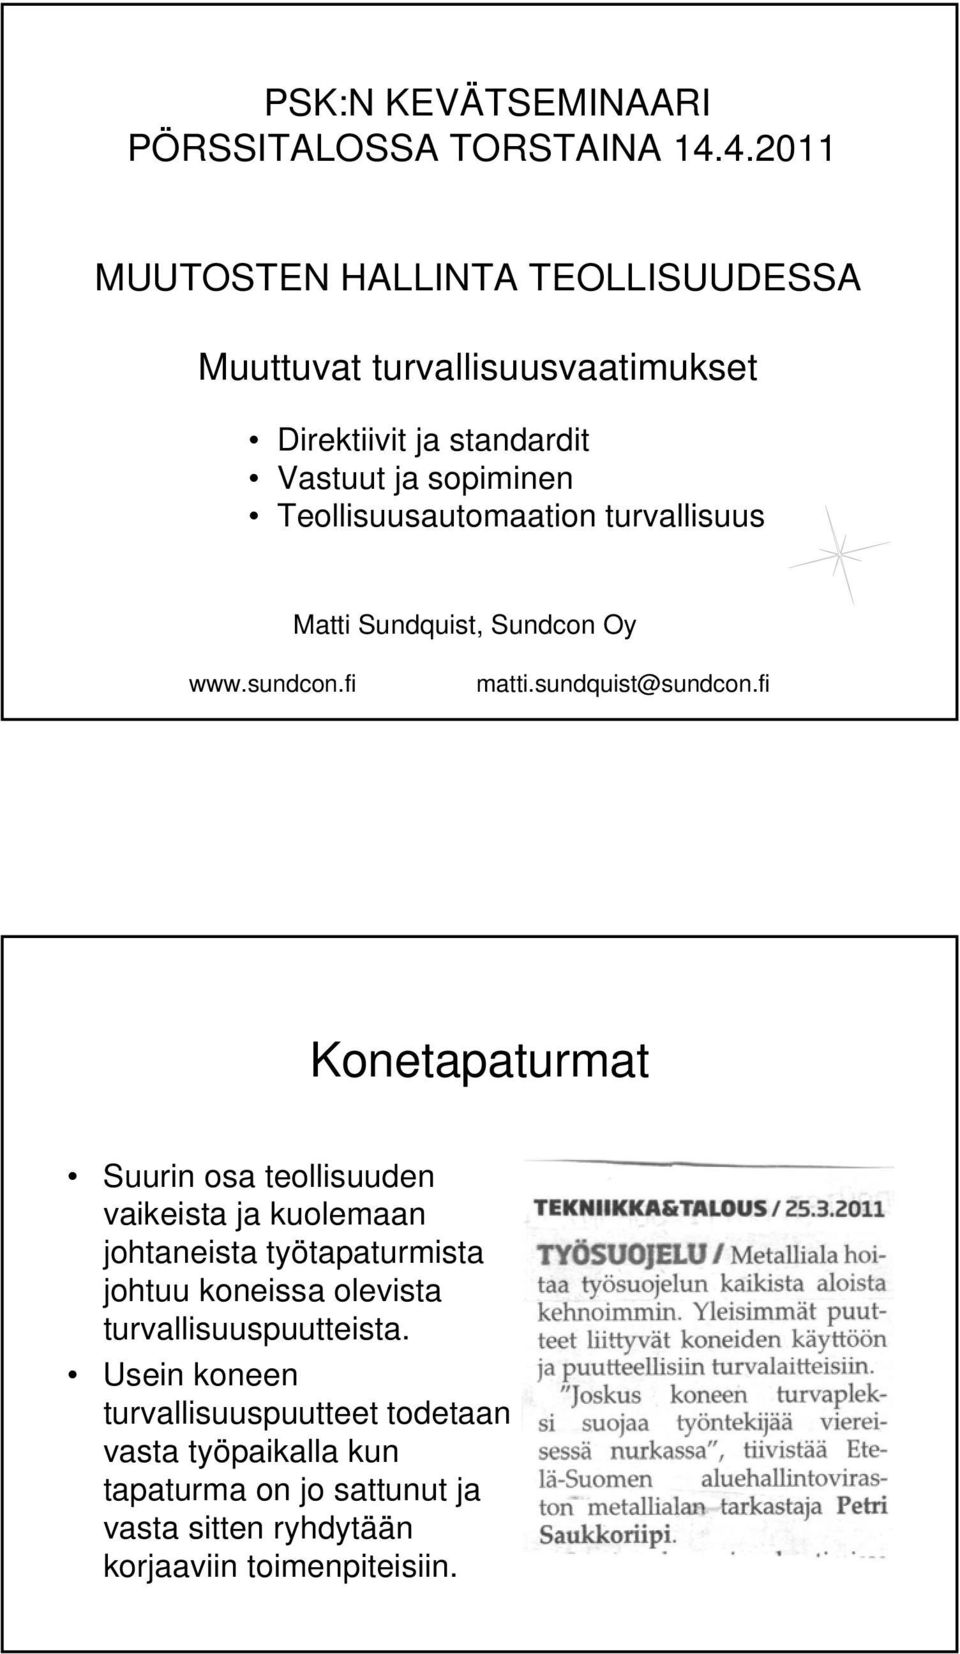 Teollisuusautomaation turvallisuus Matti Sundquist, Sundcon Oy www.sundcon.fi matti.sundquist@sundcon.